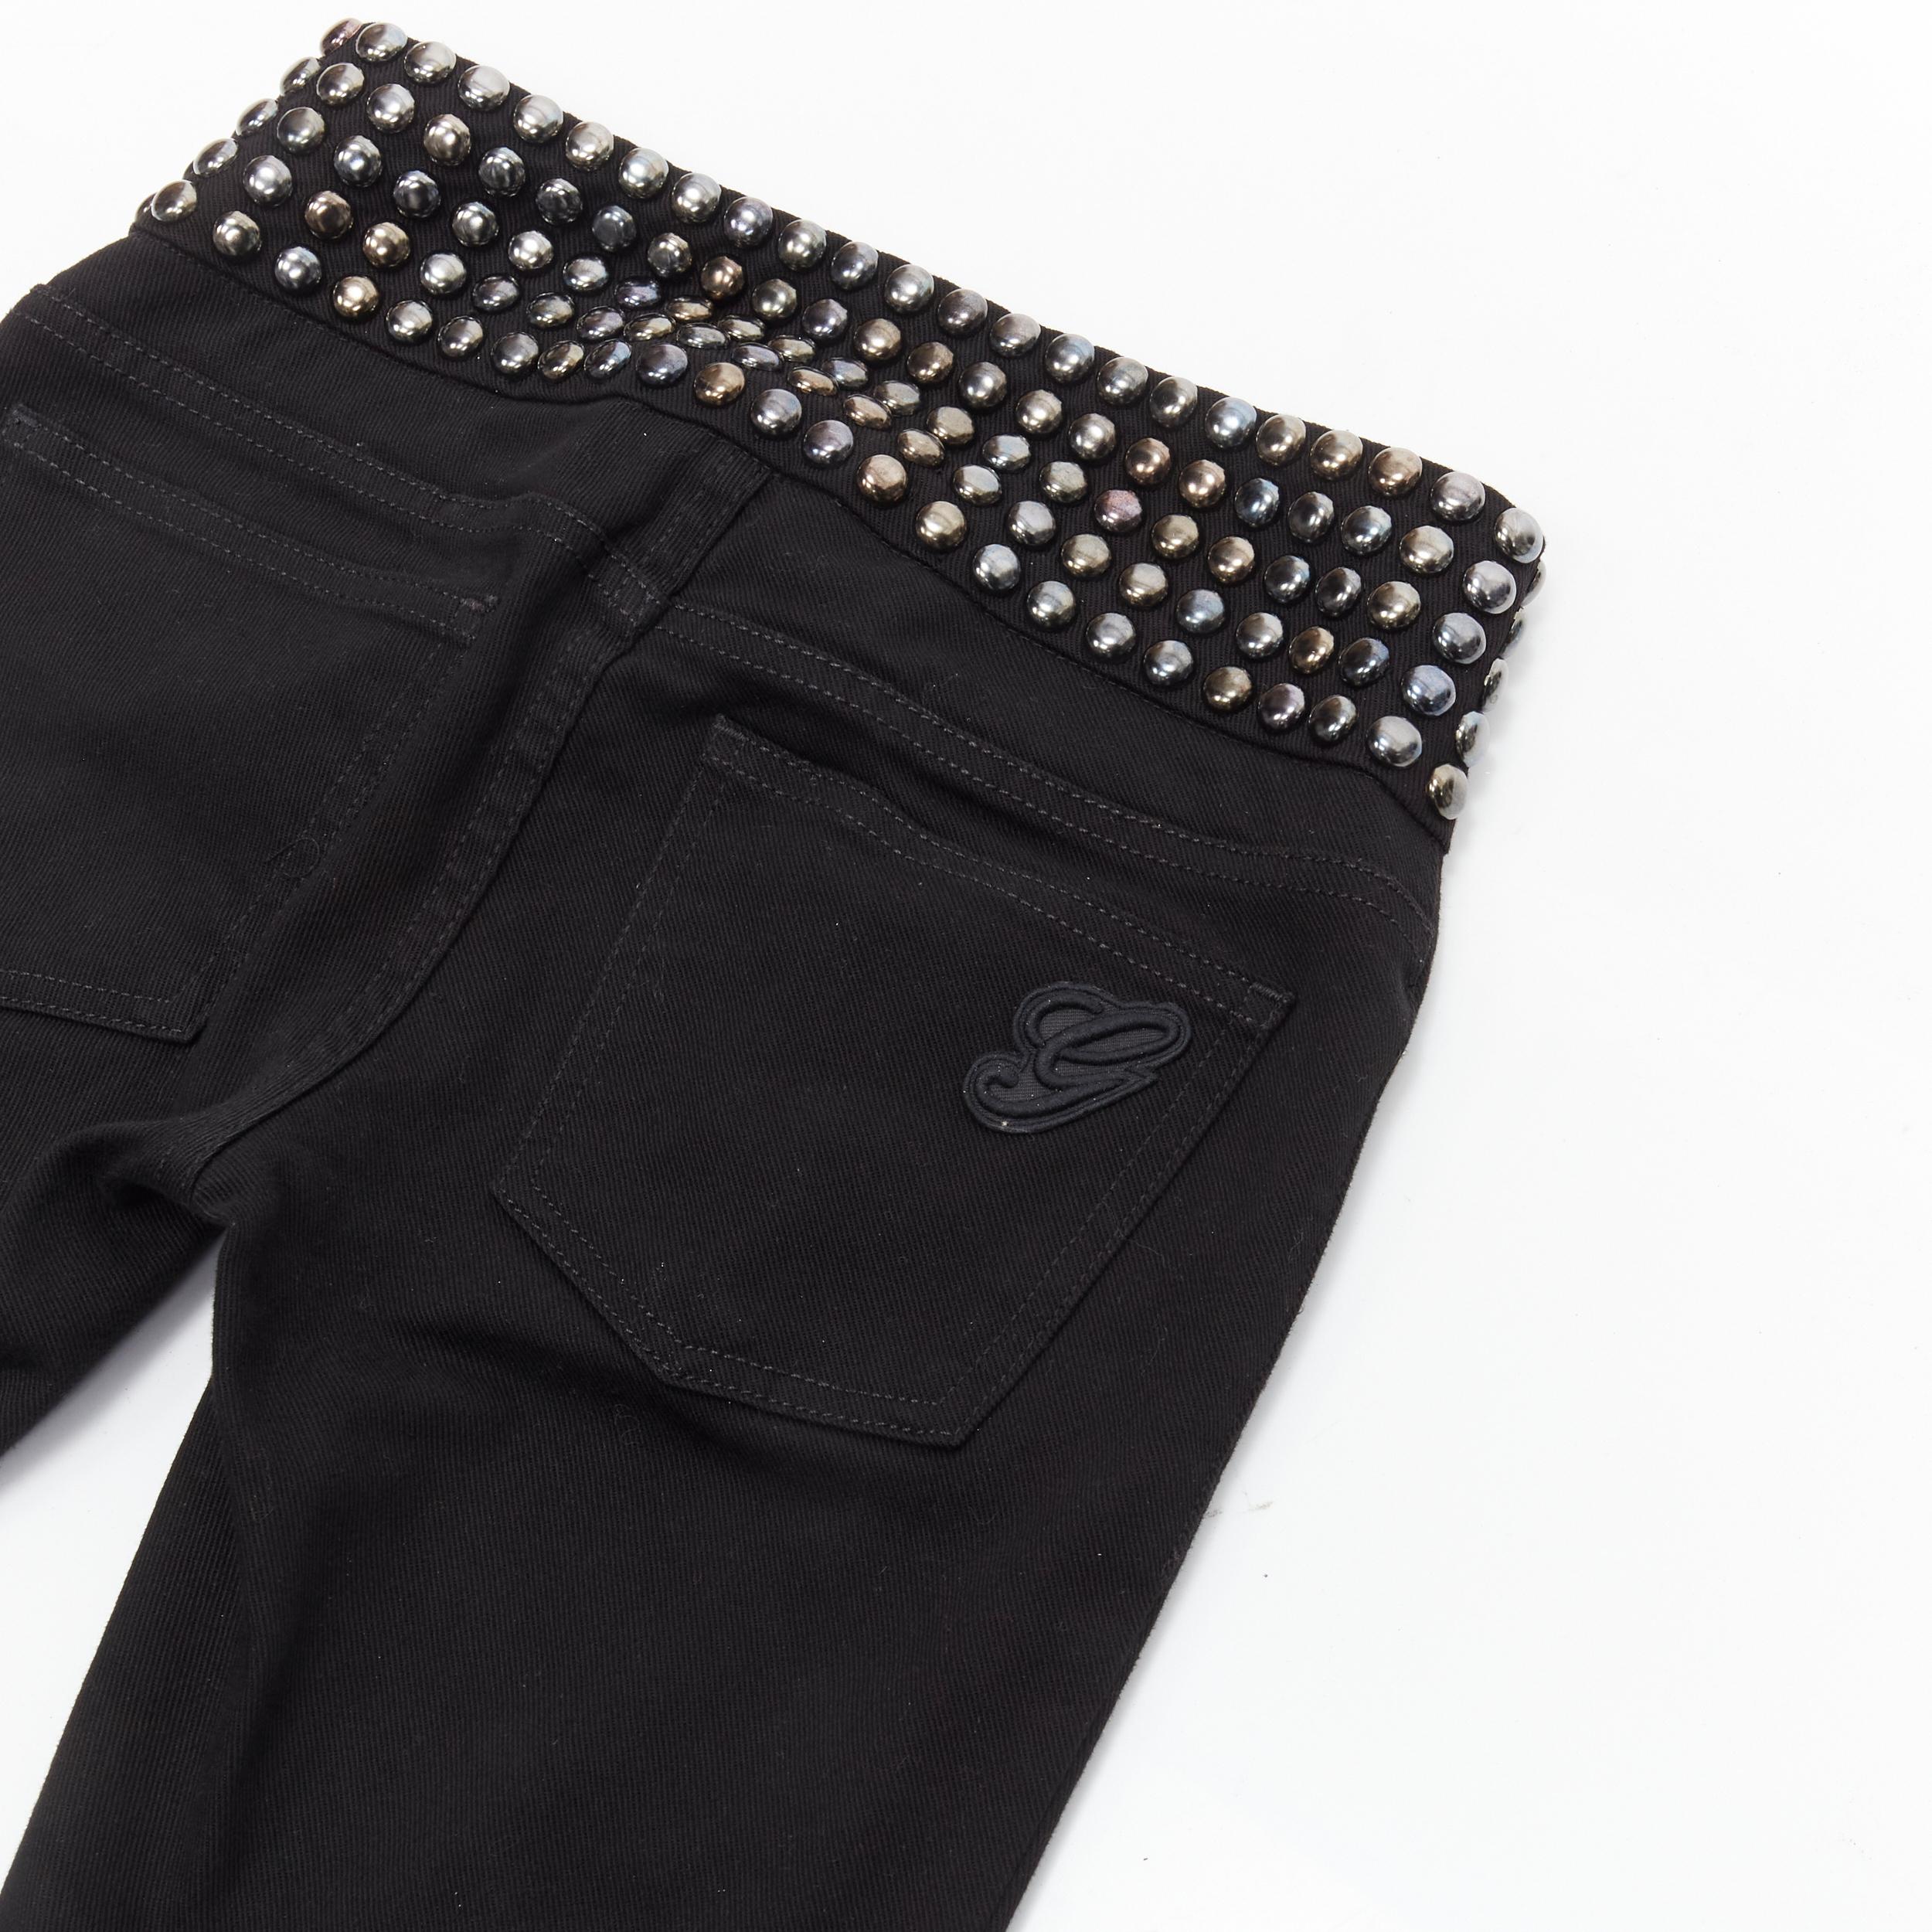 GUCCI Silberne Denim-Jeans mit Kuppelstecker-Verzierung an der Taille IT36 XS
Marke: Gucci
MATERIAL: Fühlt sich an wie Baumwolle
Farbe: Schwarz
Muster: Solide
Verschluss: Zip Fly
Extra Detail: Mit Kuppelnieten verziertes Taillenband.